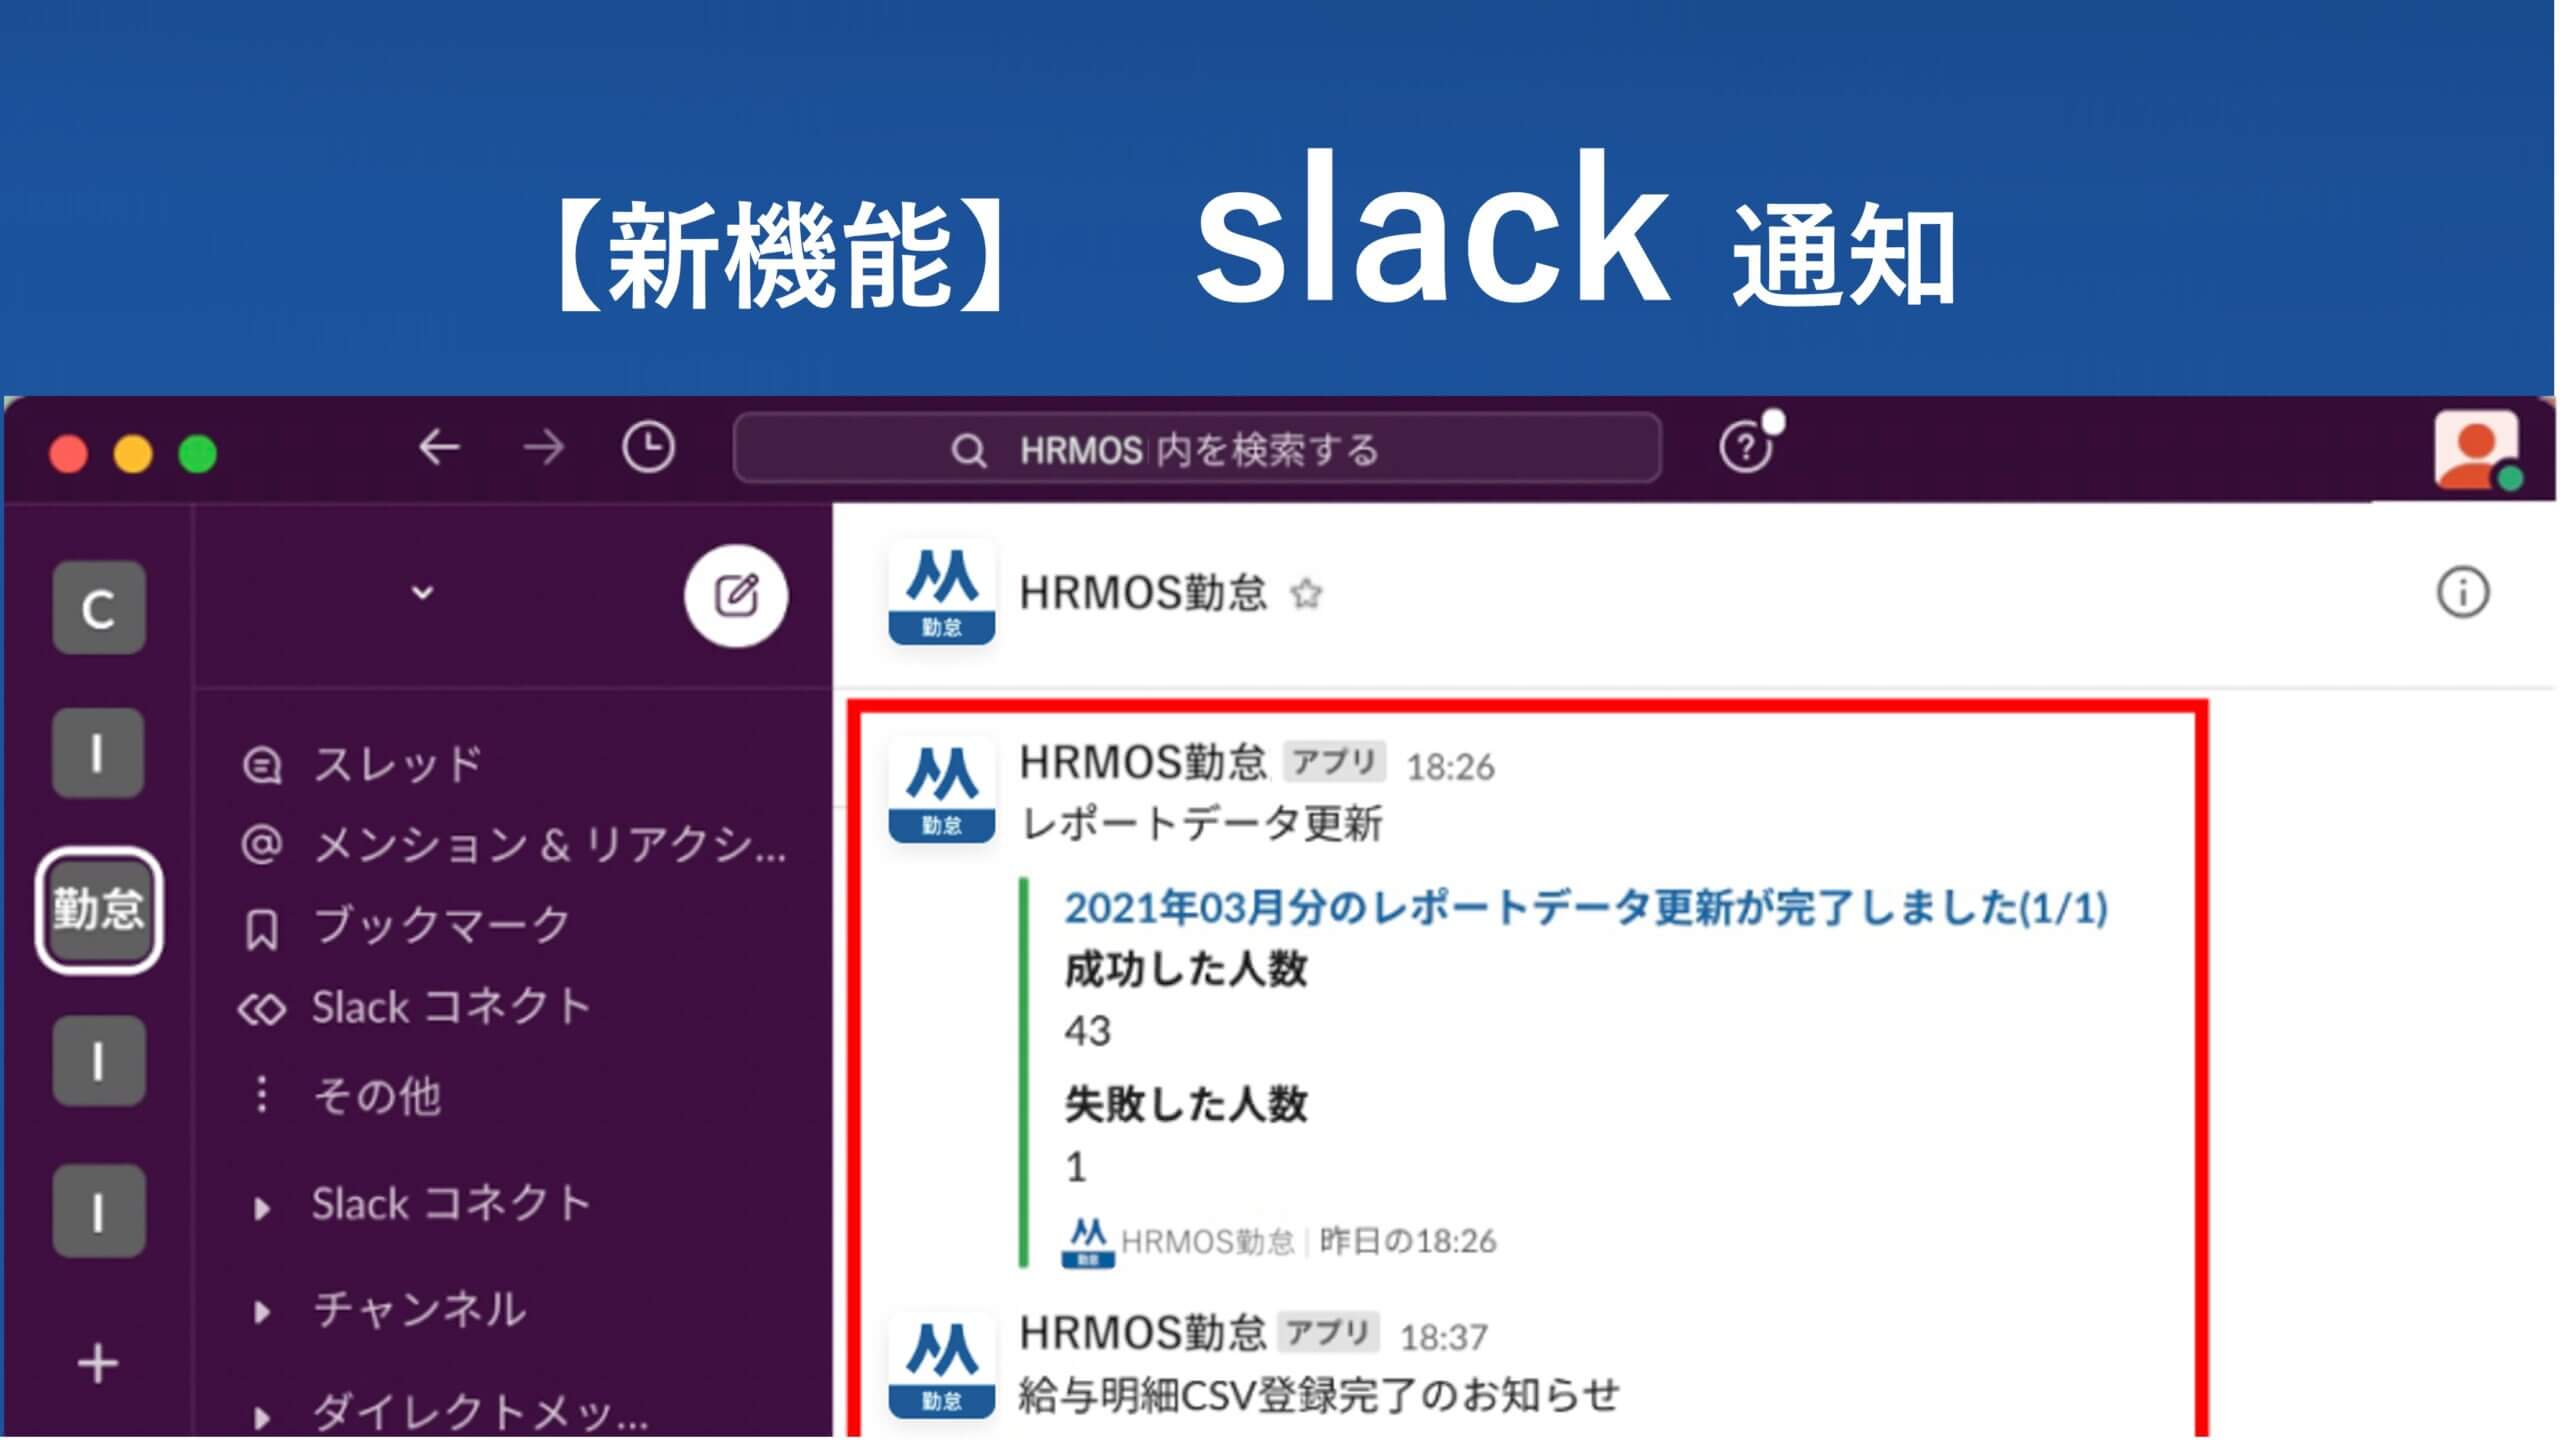 【新機能】Slack通知機能で打刻漏れ通知などをSlack上で確認 │ HRMOS勤怠 by IEYASU